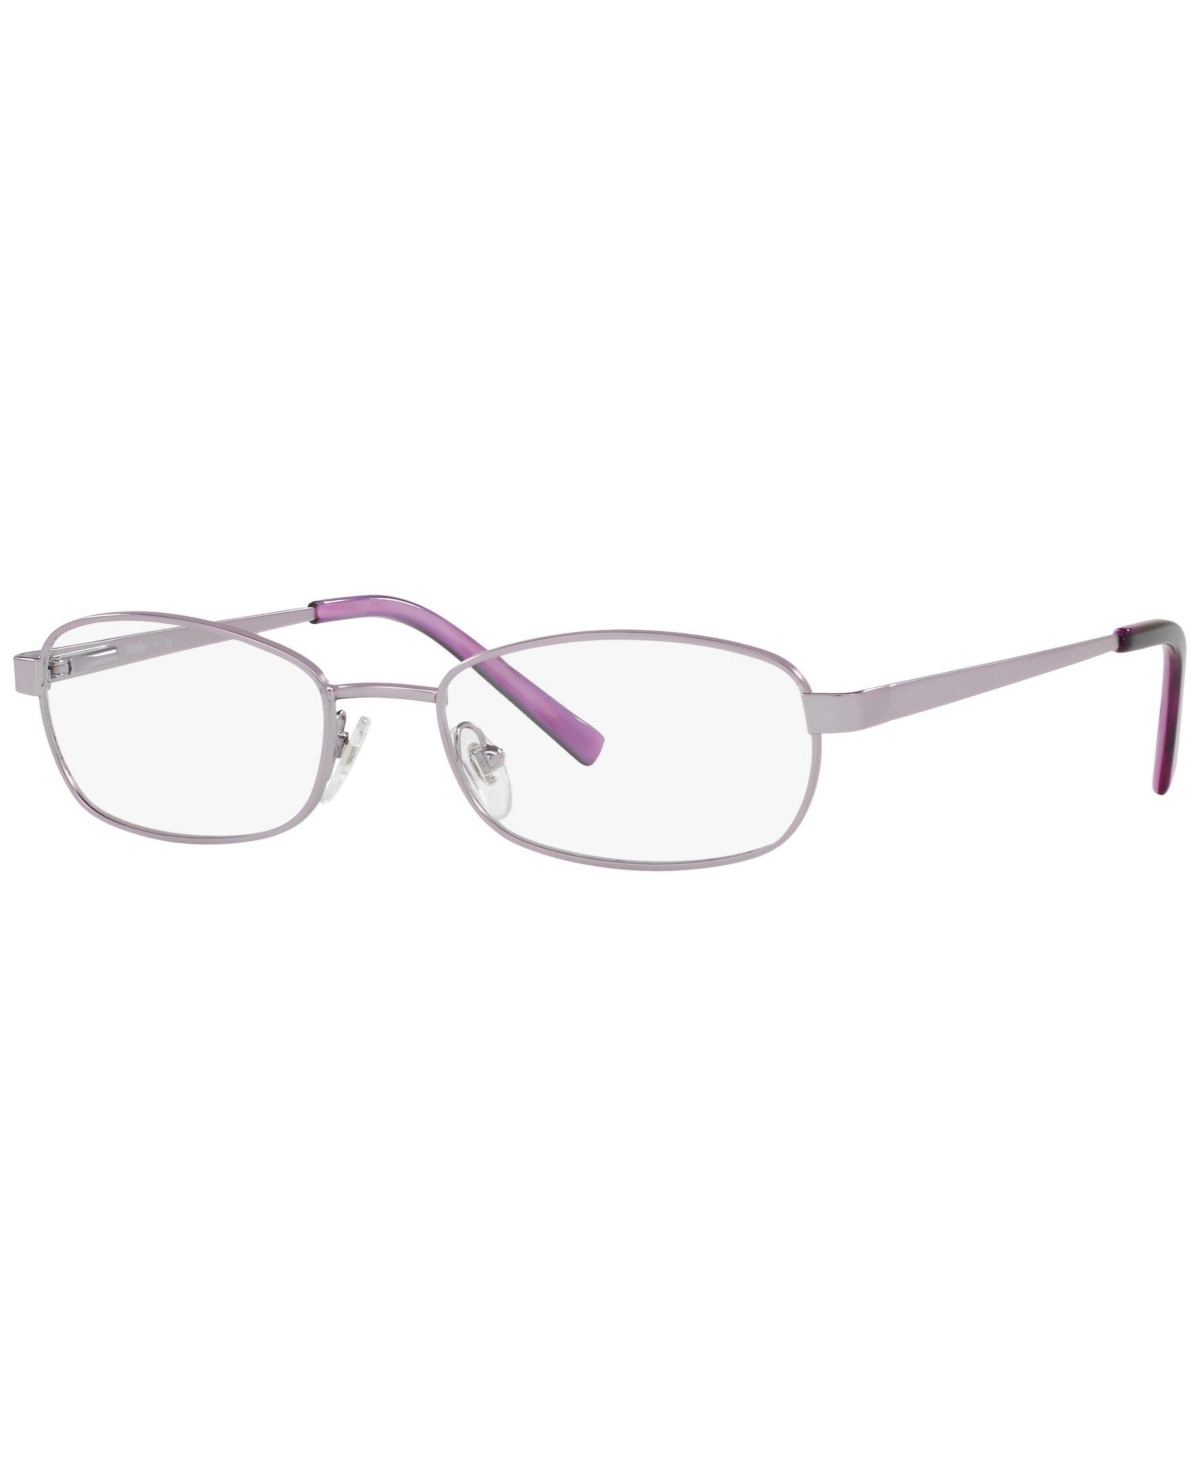 SF2591 Women's Rectangle Eyeglasses - Merlot